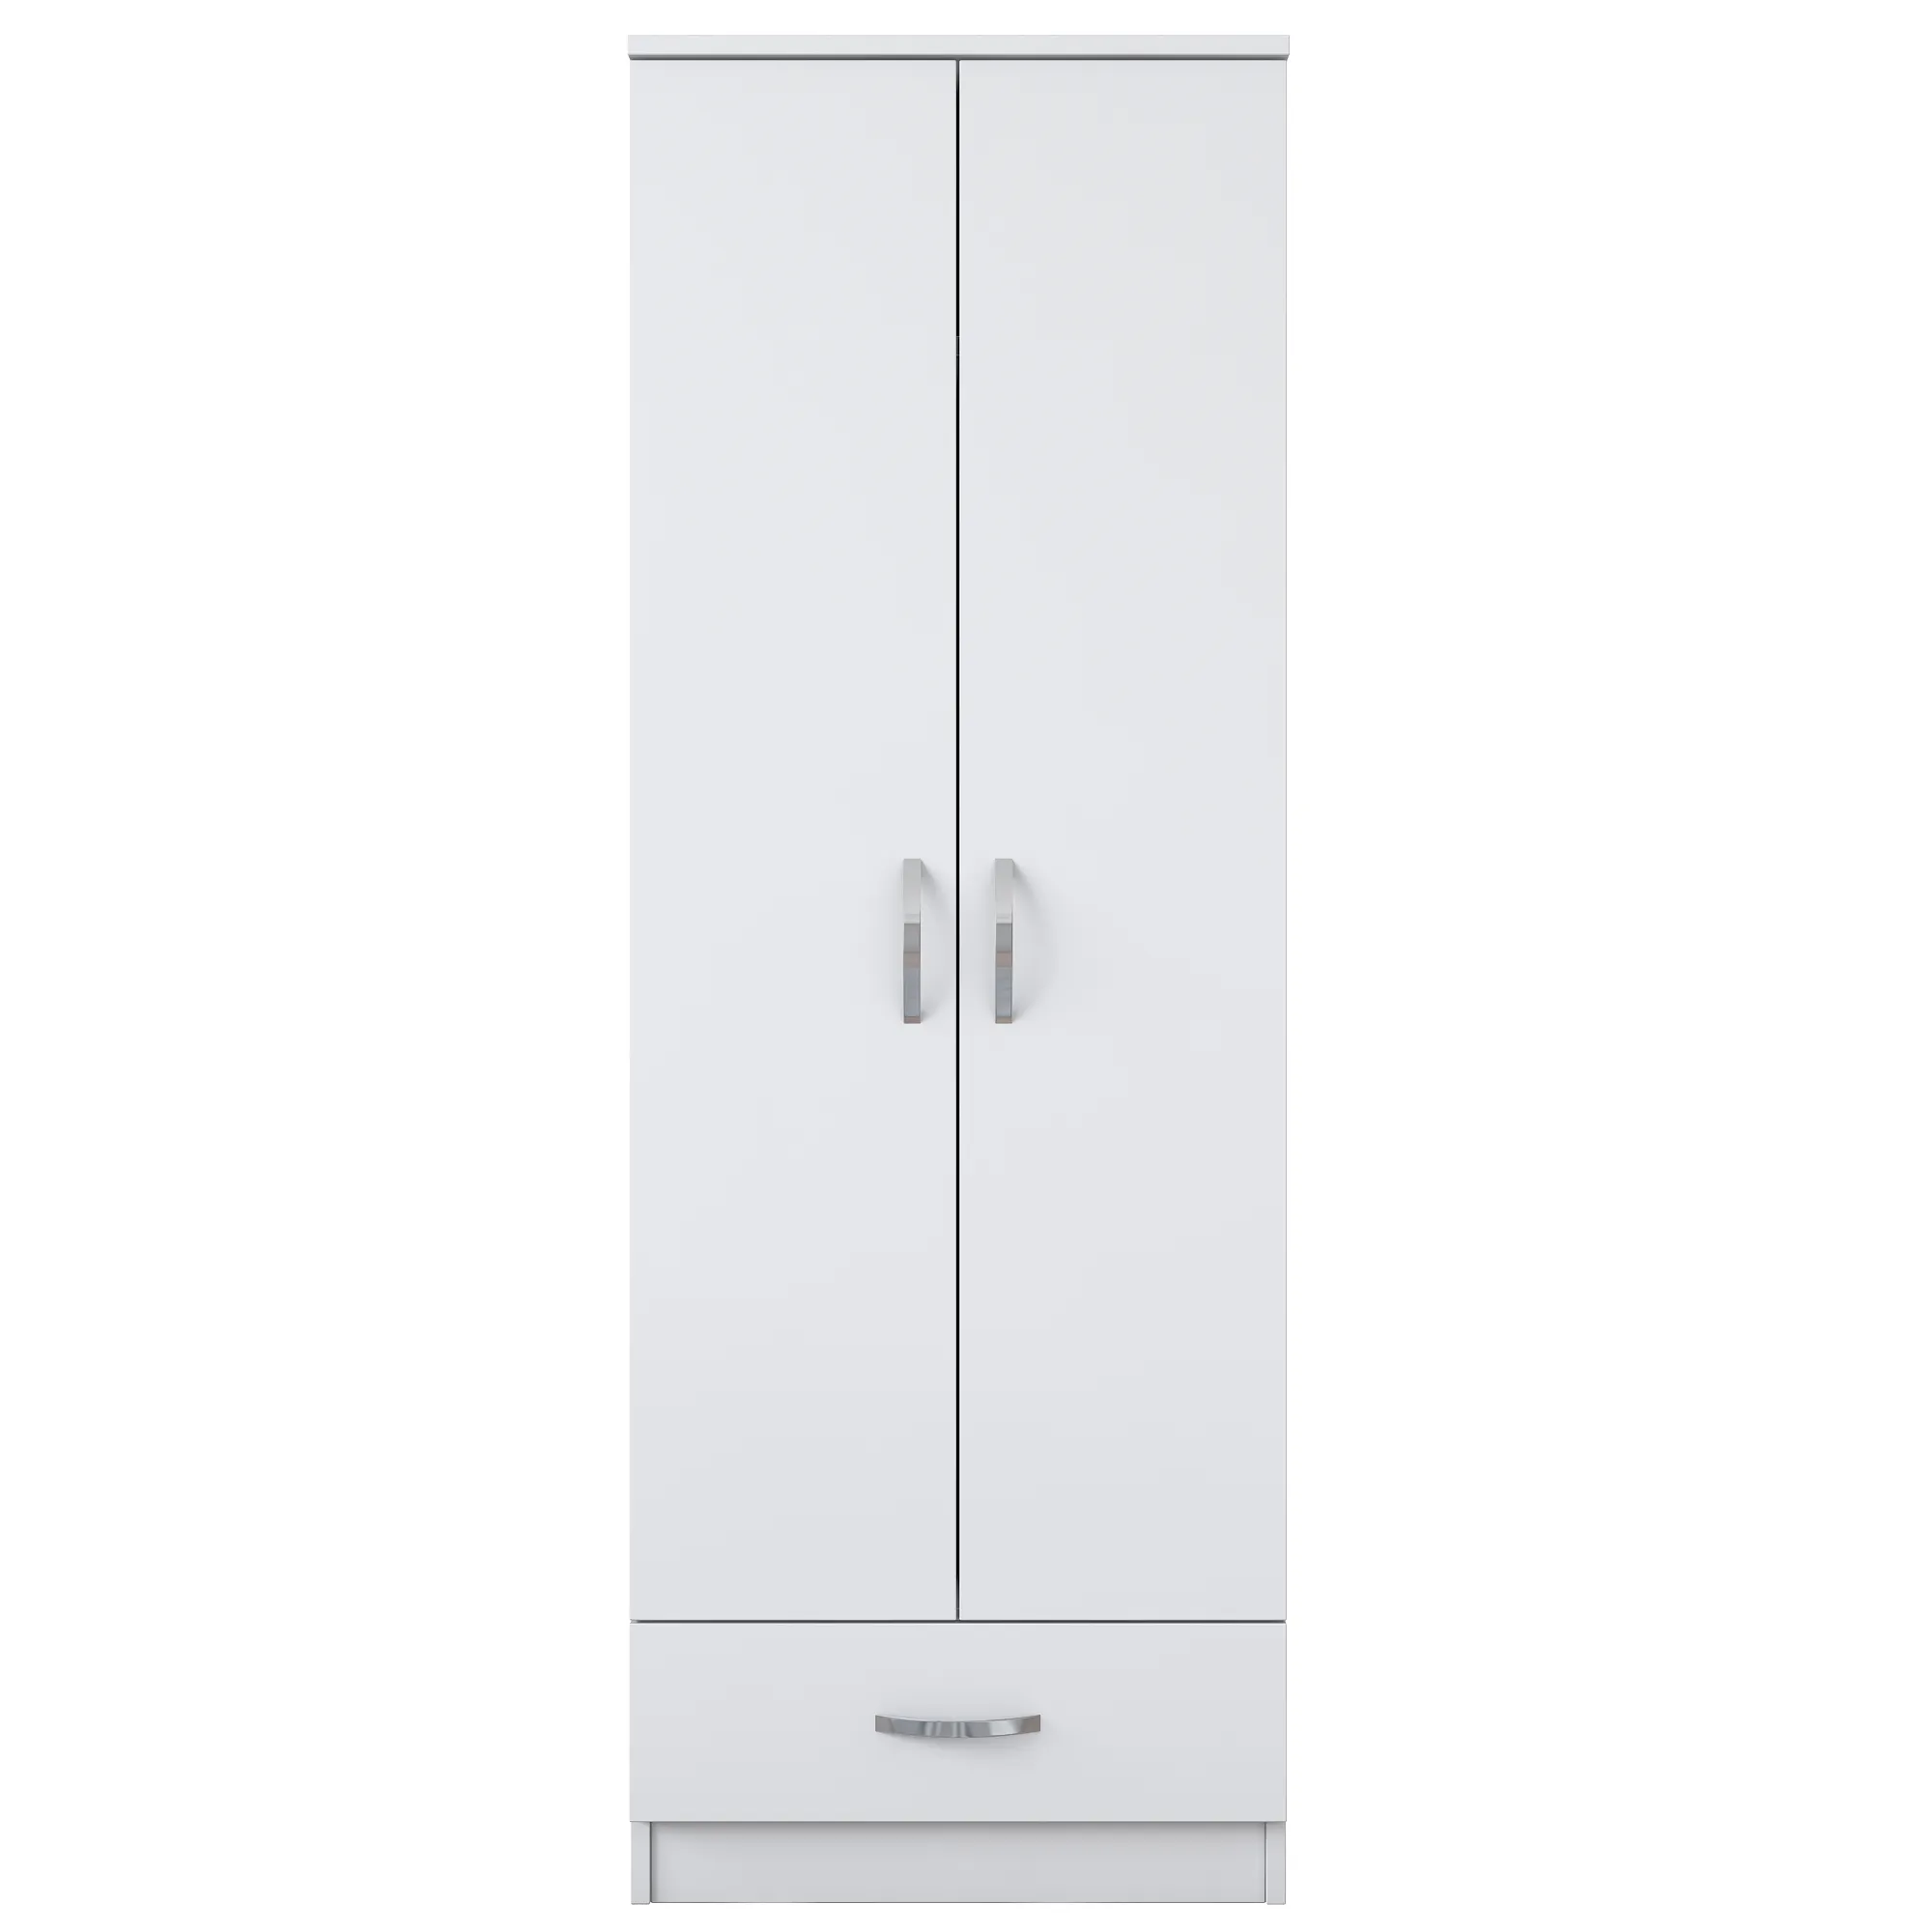 Современный Дизайн-шкаф Rani BA103 в минималистичном стиле с 2 дверями, 1 ящик, белый цвет, шкаф, шкаф, продавец от производителя